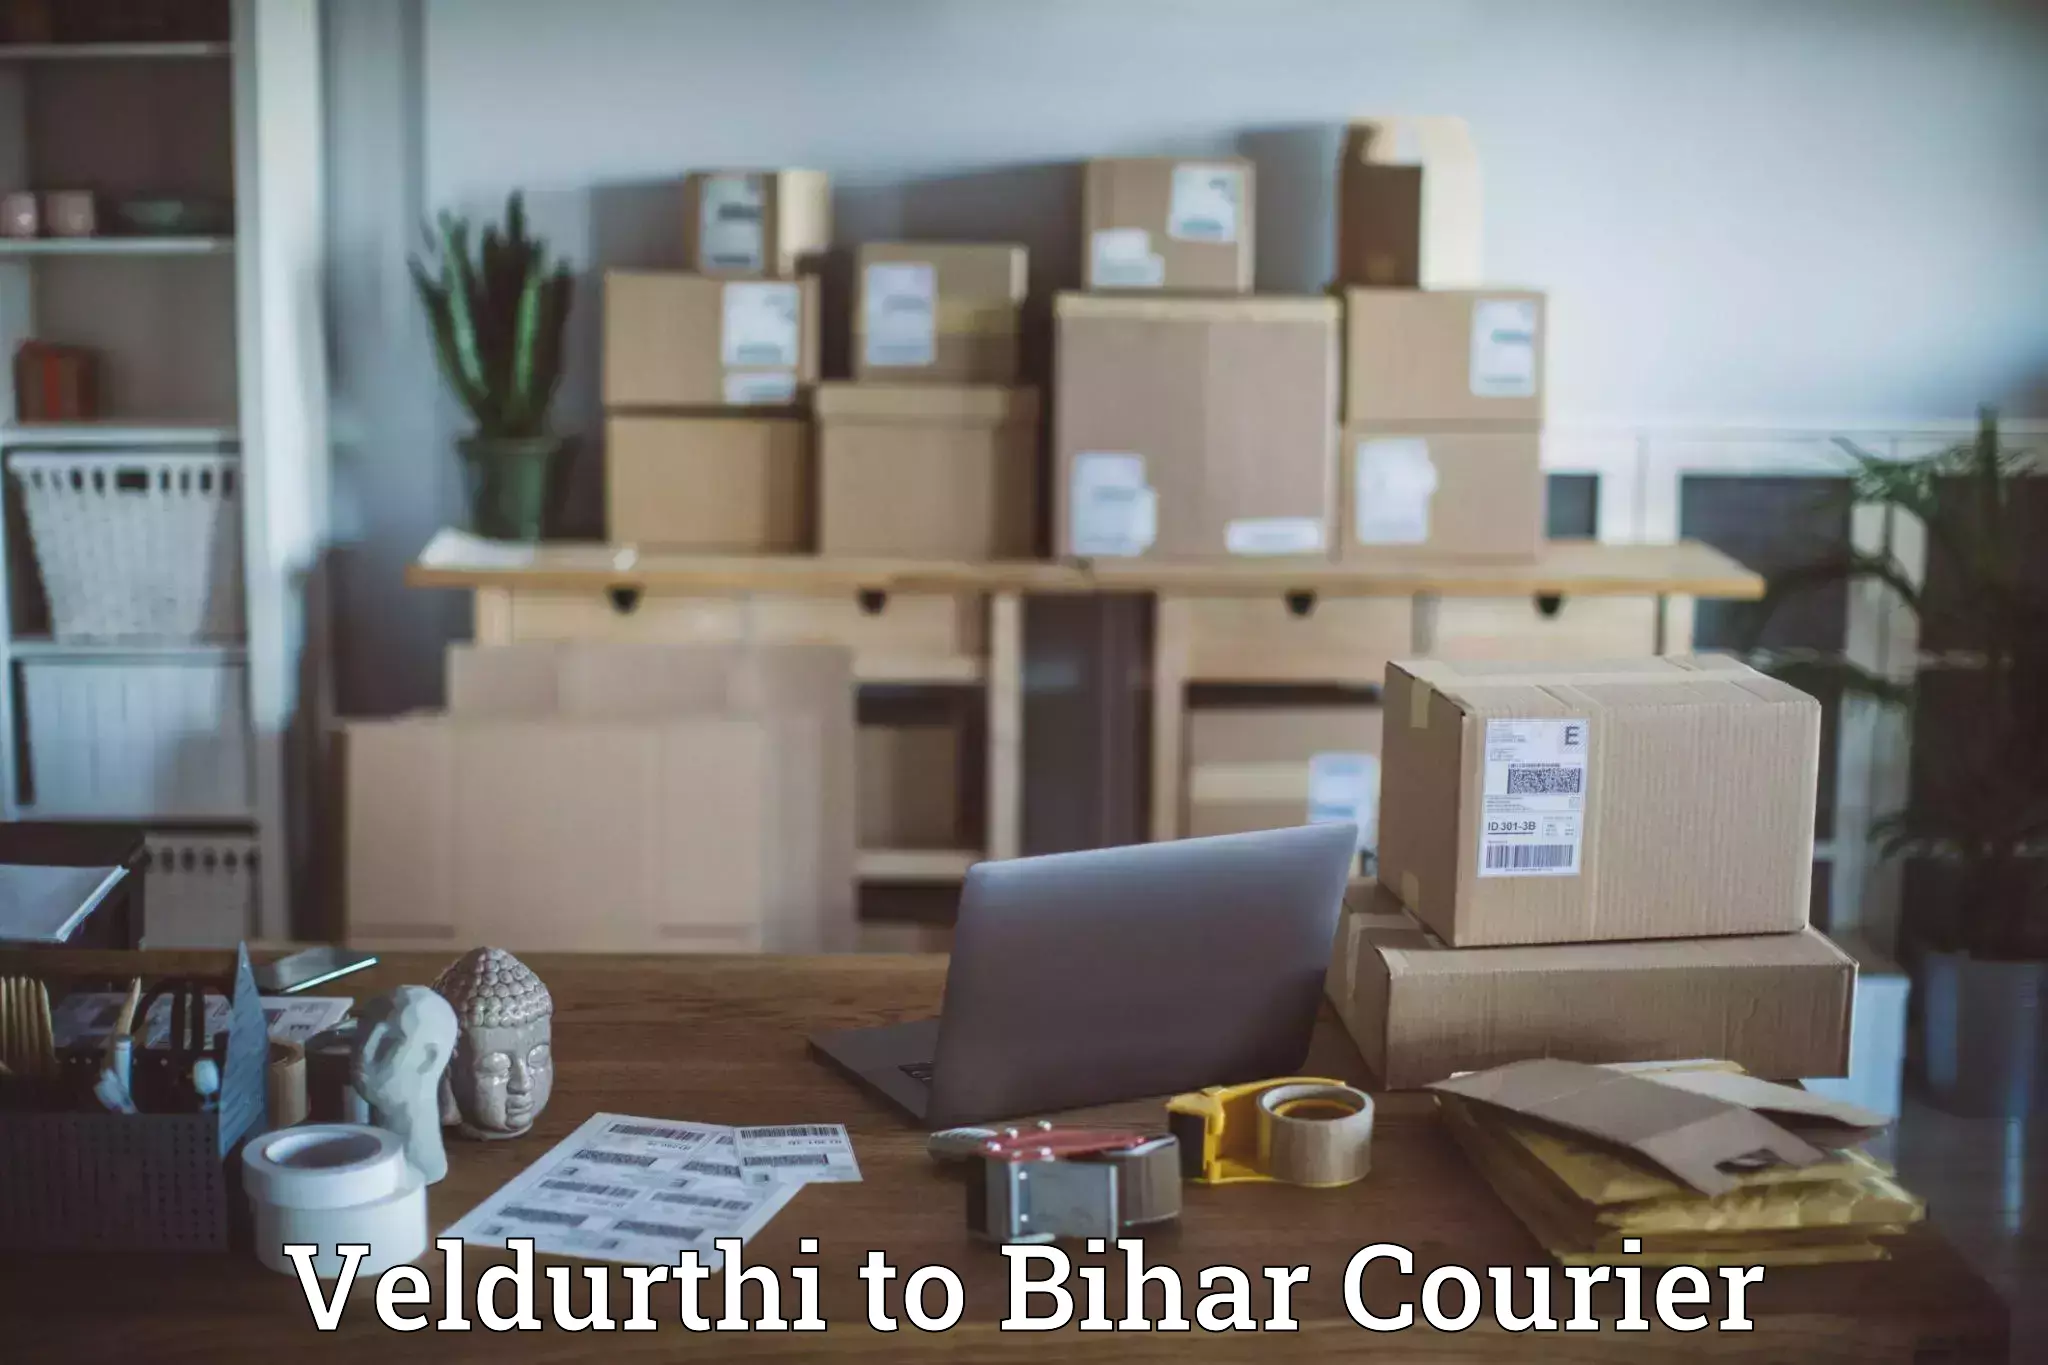 Large package courier Veldurthi to Manihari